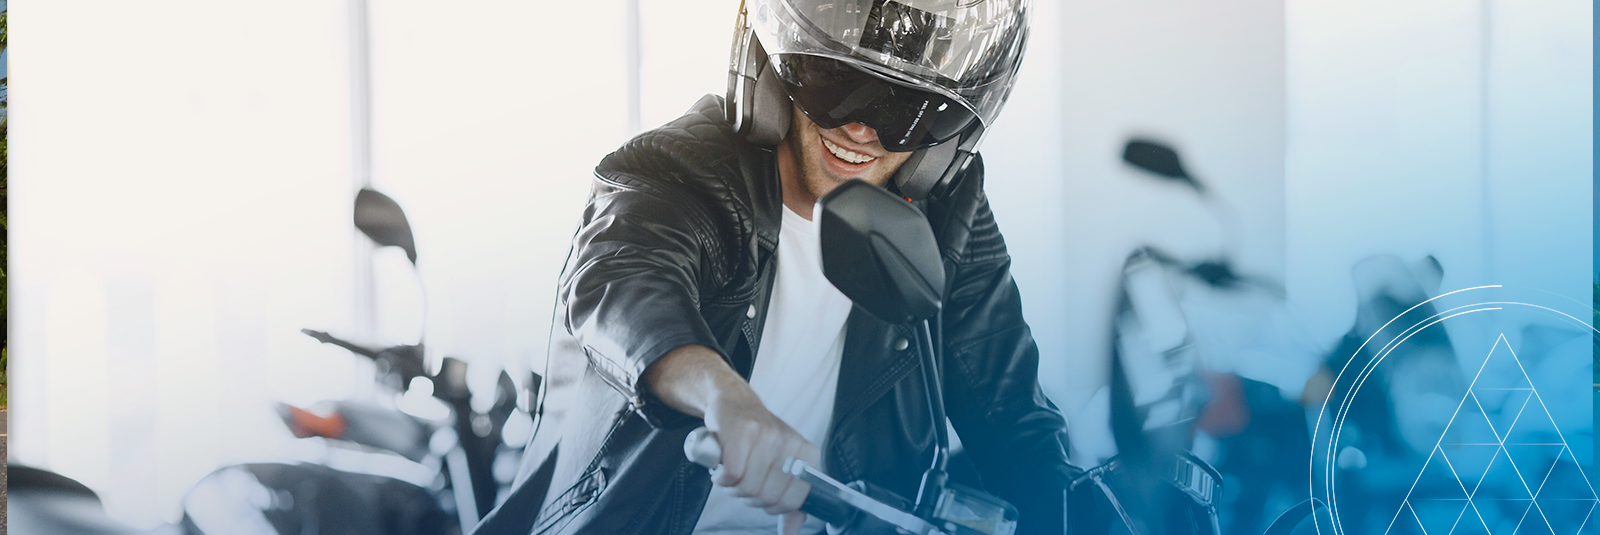 Conheça todas as vantagens do consórcio de moto para motociclistas que precisam de um veículo próprio para trabalhar!